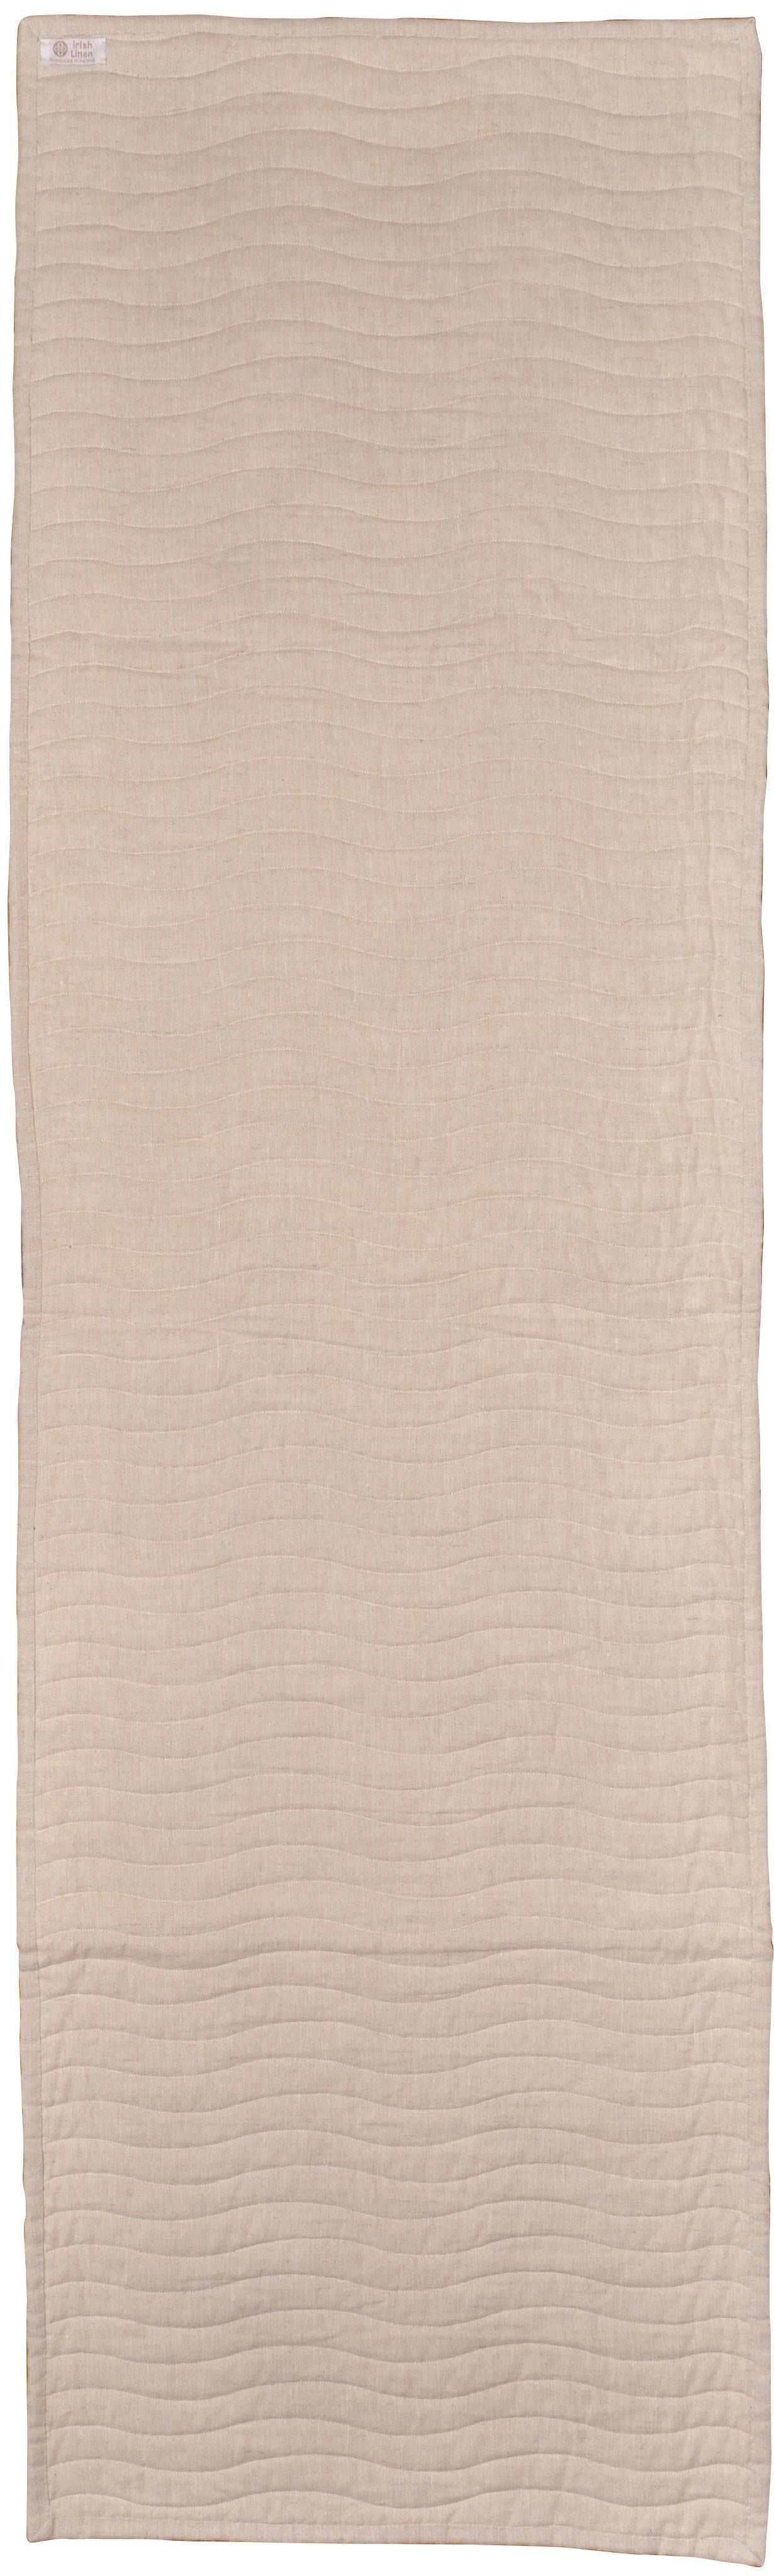 Northern Irish  Bed Runner Quilt Blanket Vintage Irish Linen Patchwork Handmade  For Sale